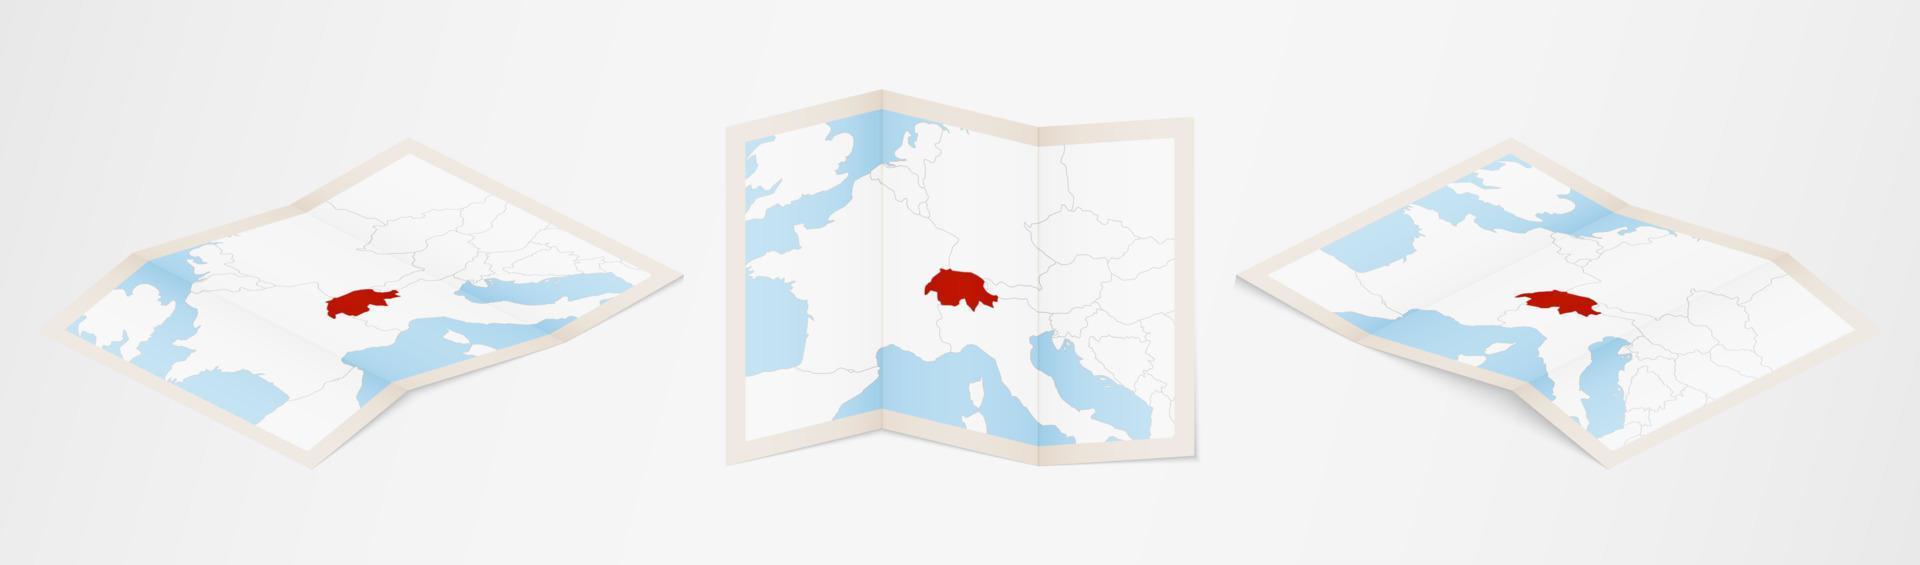 mapa plegado de suiza en tres versiones diferentes. vector